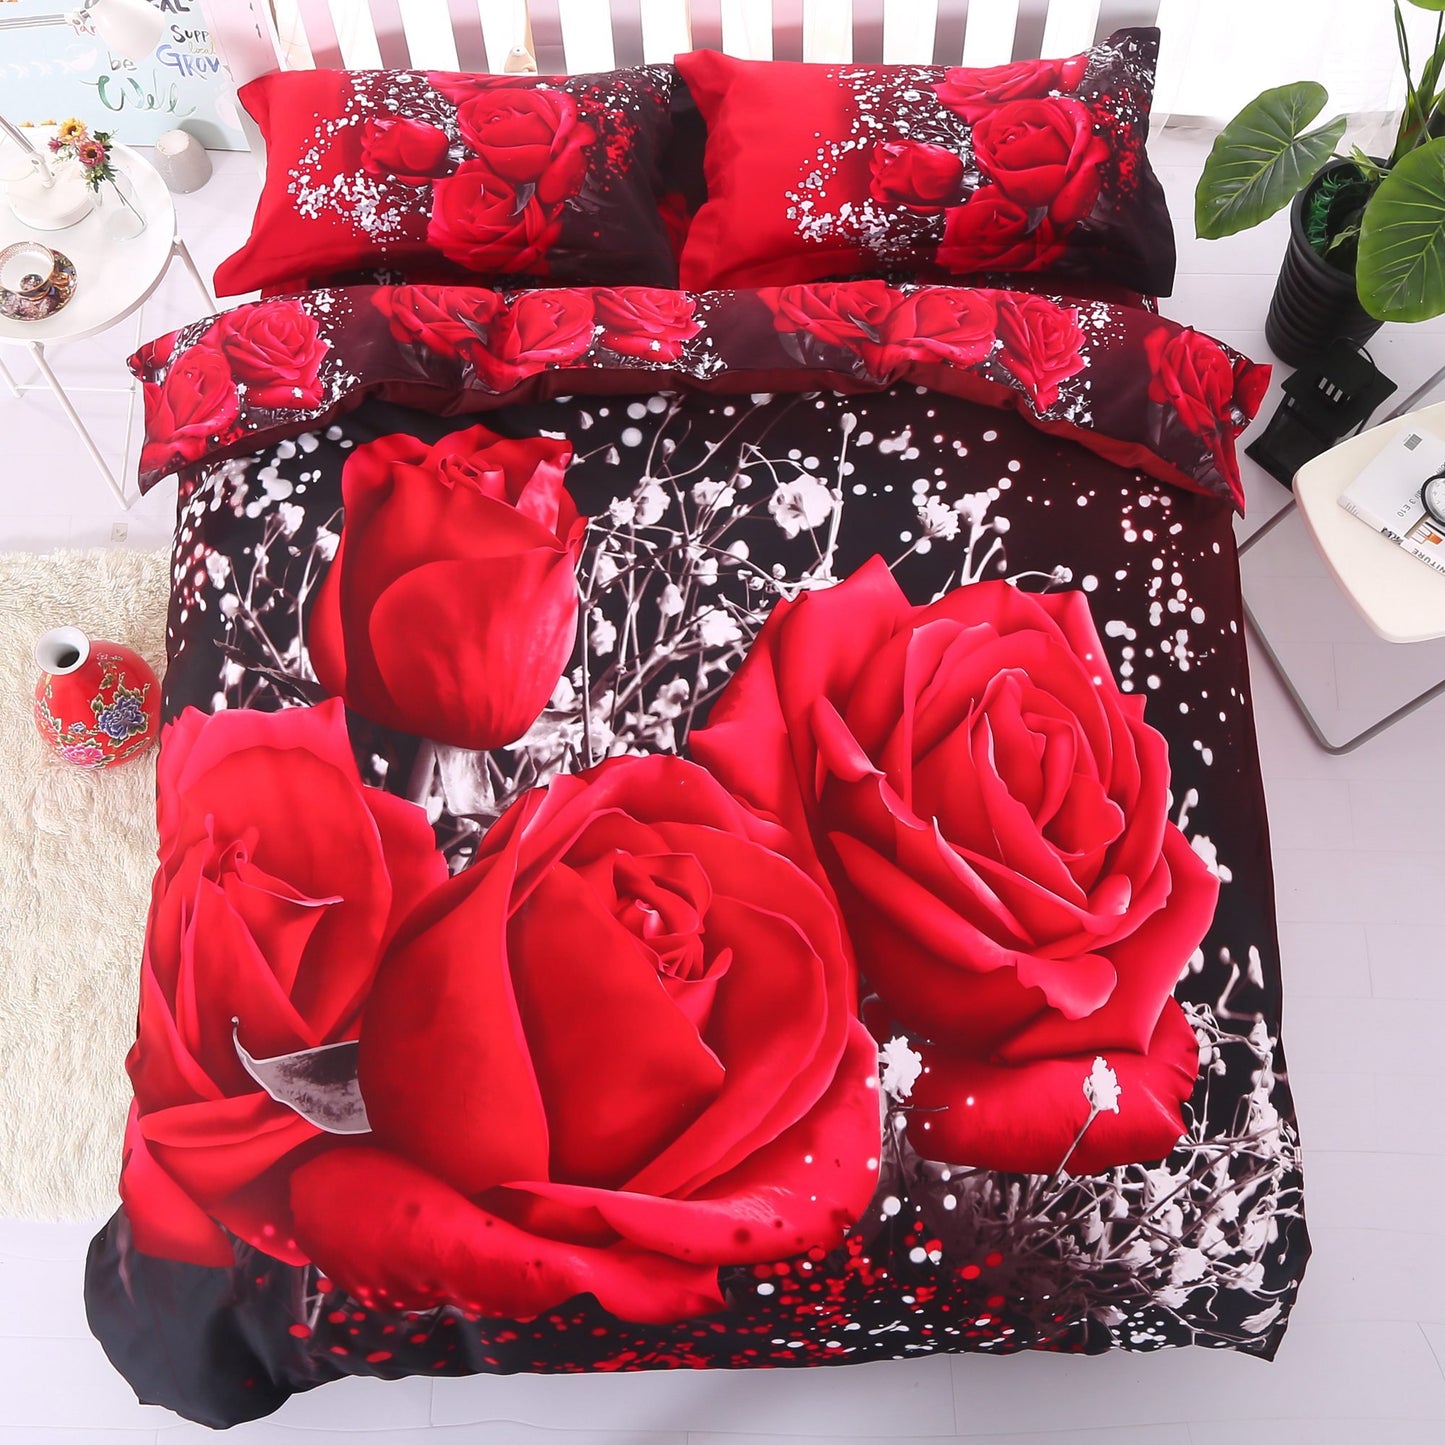 Luxuriöse 3D-Bettwäsche-Sets/Bettbezüge aus weicher Baumwolle mit leidenschaftlichem roten Rosen-Aufdruck, ultraweich, lichtecht